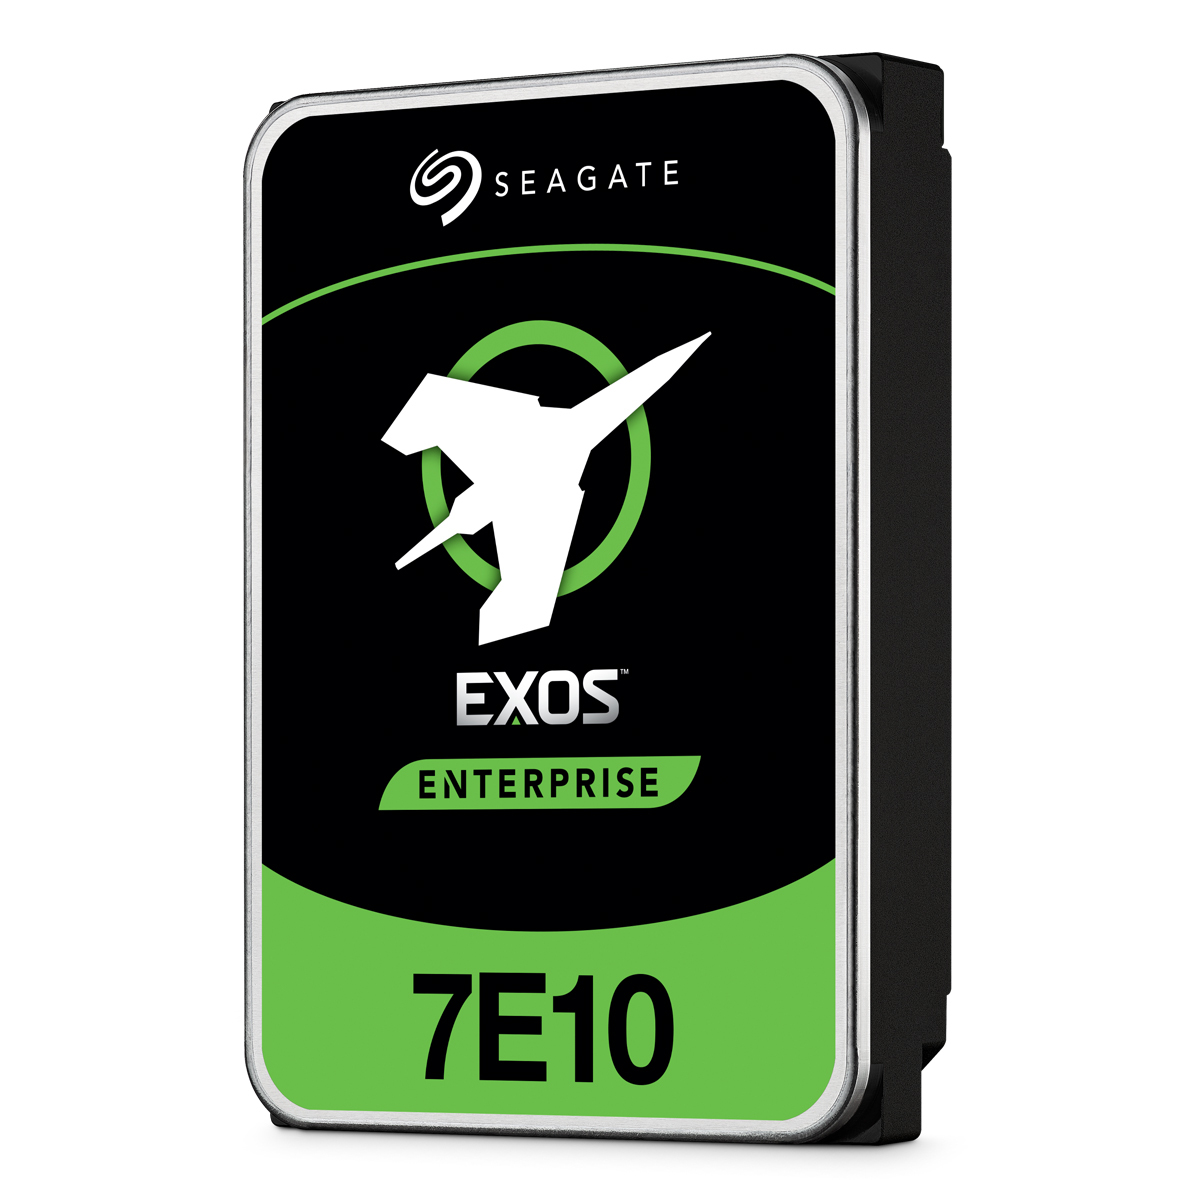 Seagate Exos 7E10 8TB 3.5 Zoll SATA CMR Interne Enterprise Festplatte mit FastFormat (512e/4Kn) von Seagate